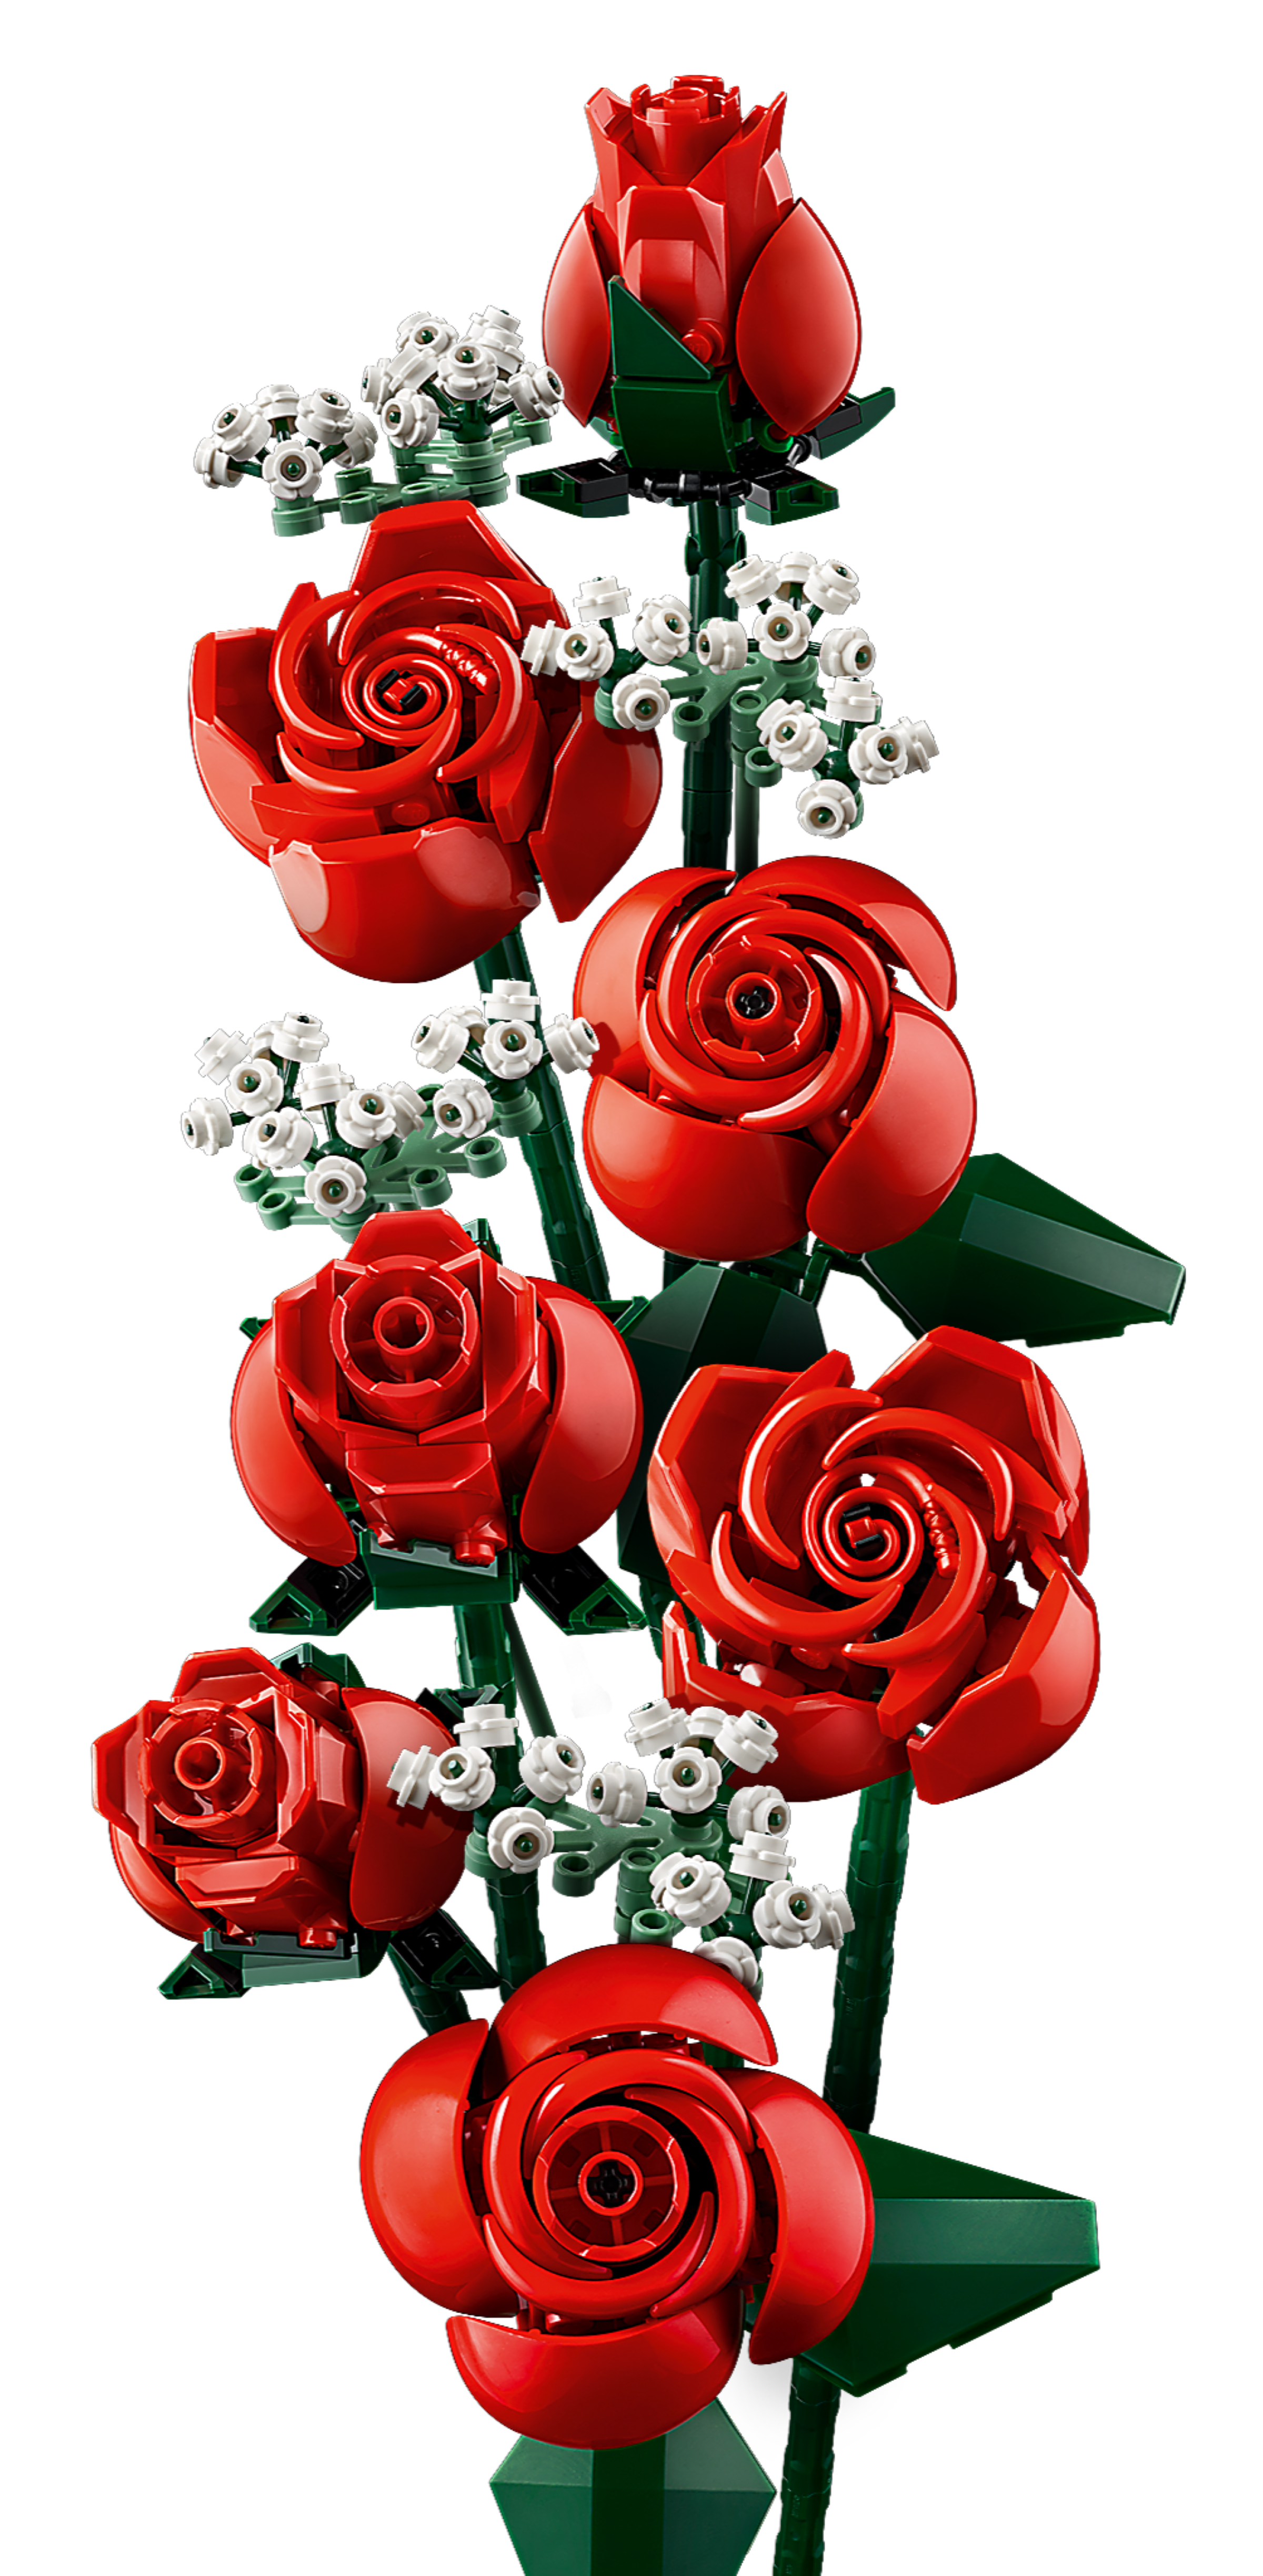 lego 10328 Bouquet di Rose 